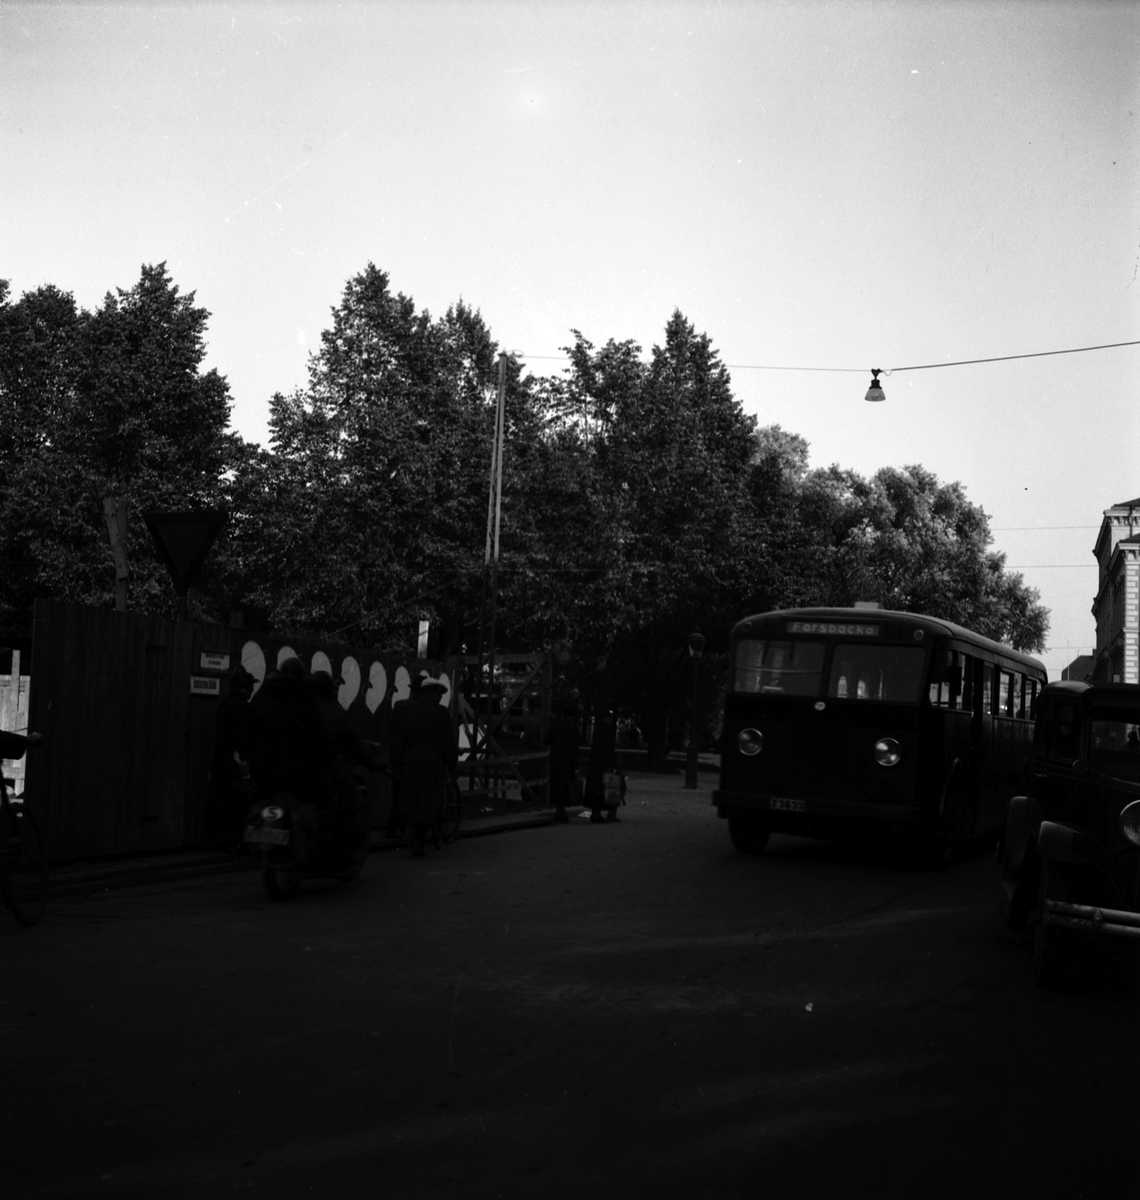 Reportage för Arbetarbladet. Trafiken på Drottninggatan med Forsbackabussen.
Oktober 1937